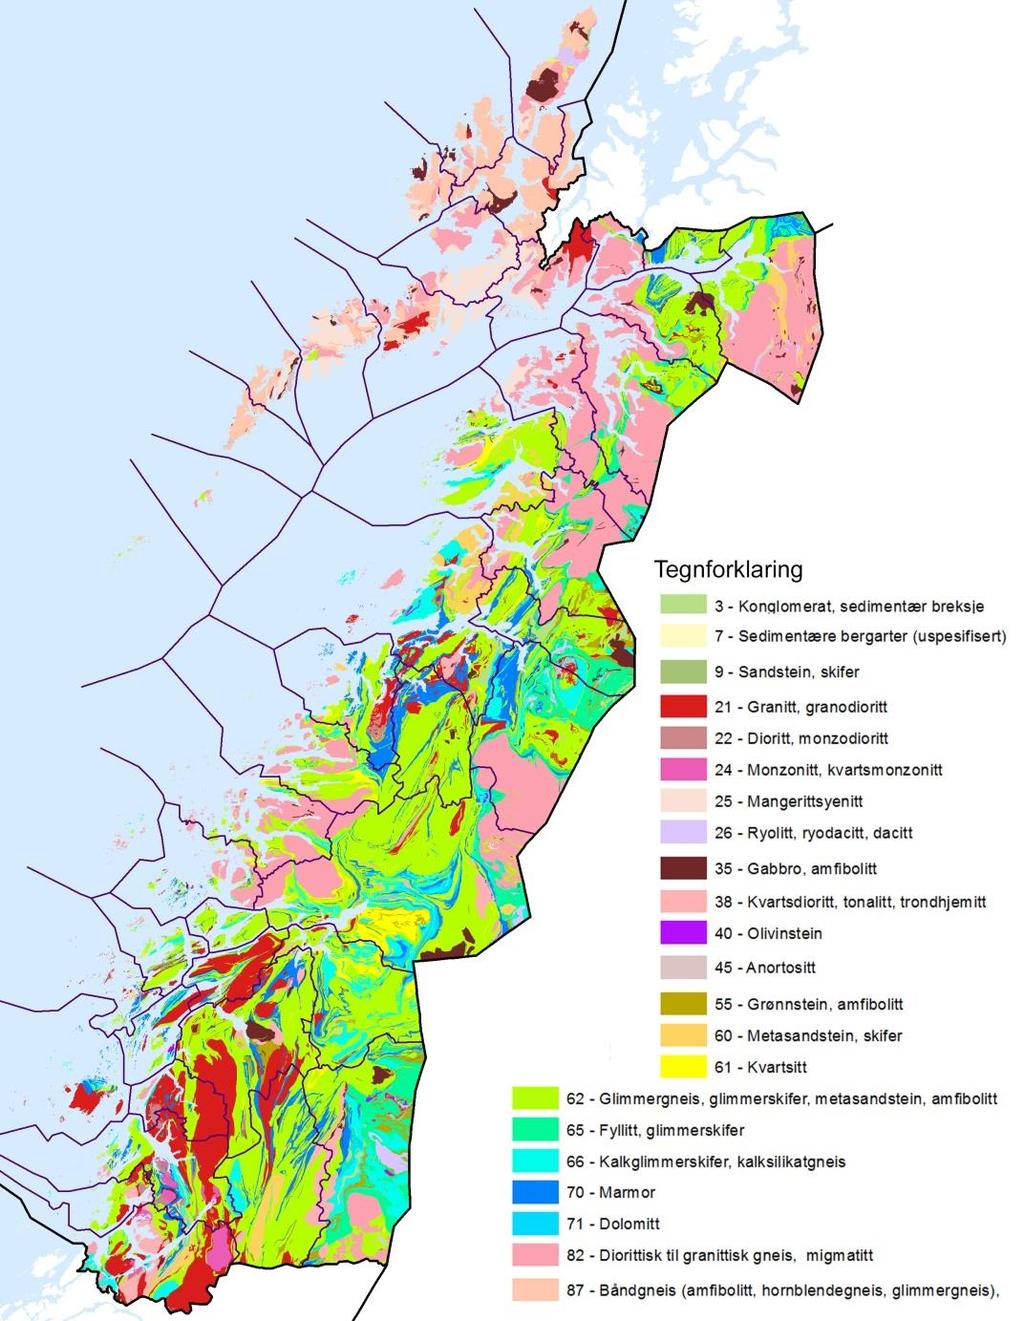 Berggrunn Berggrunnen har lokalt og regionalt stor betydning for variasjonen i vegetasjonstyper. Berggrunnskart for Nordland (www.ngu.